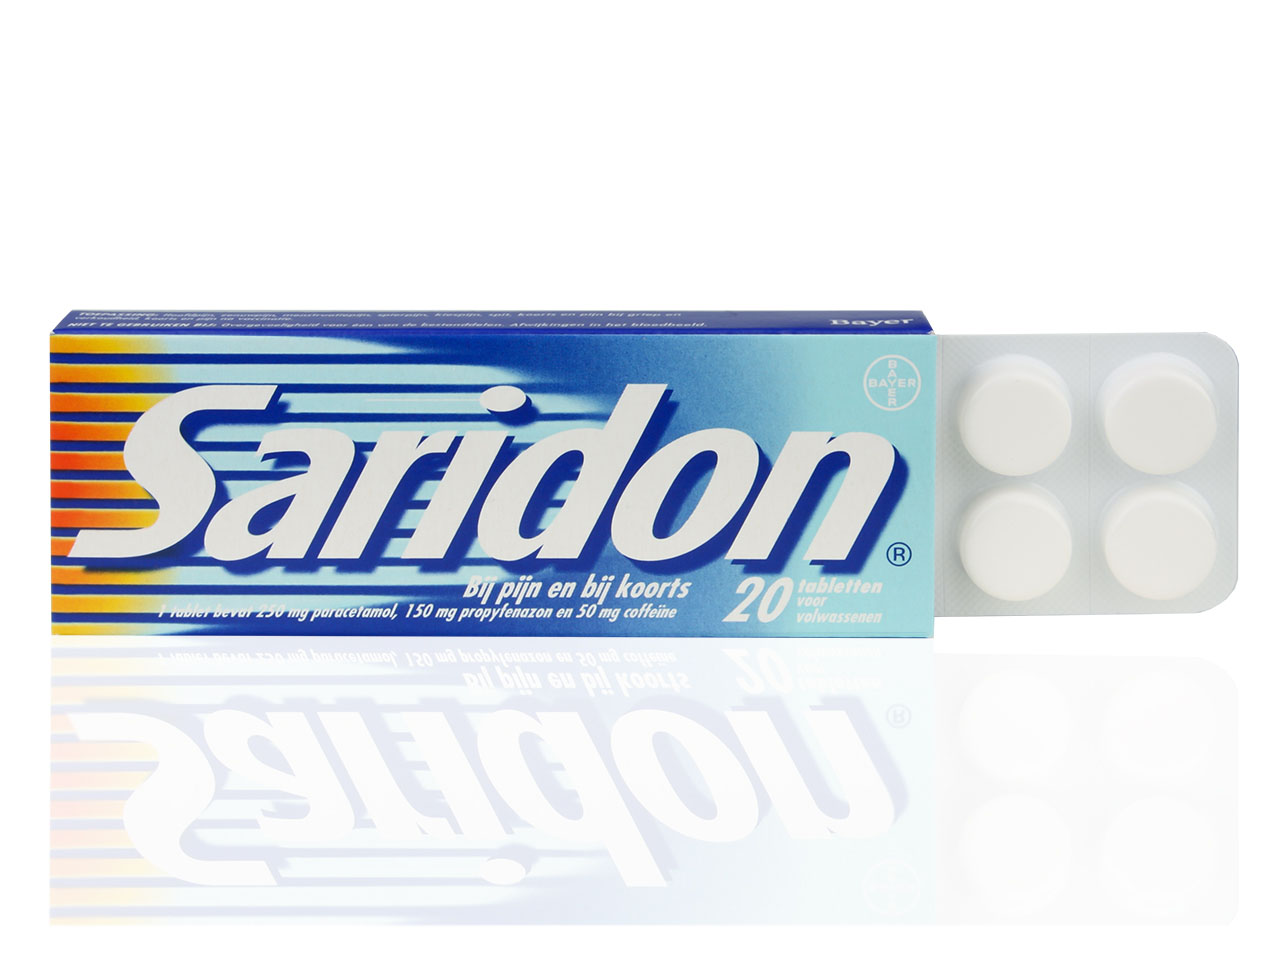 Saridon Tablet